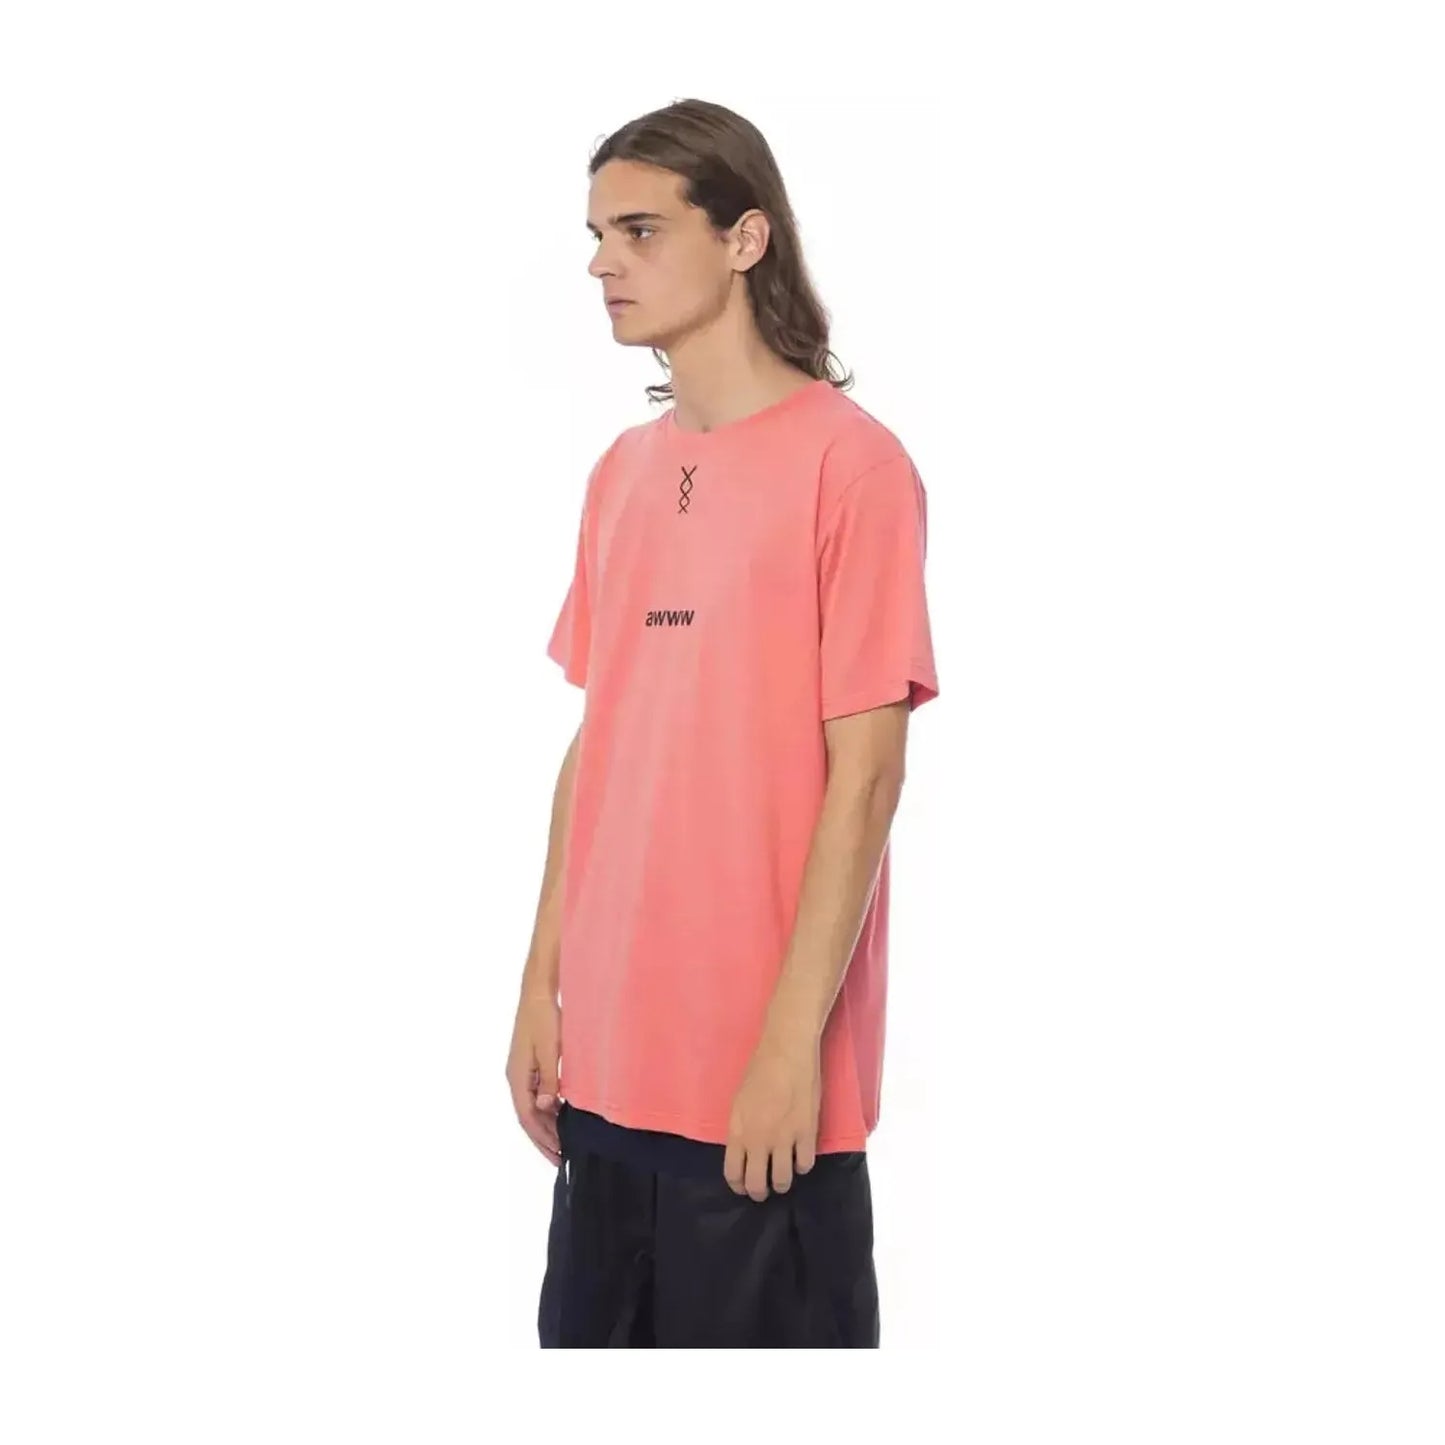 Nicolo Tonetto Elegant Pink Round Neck Cotton Tee salmone-t-shirt